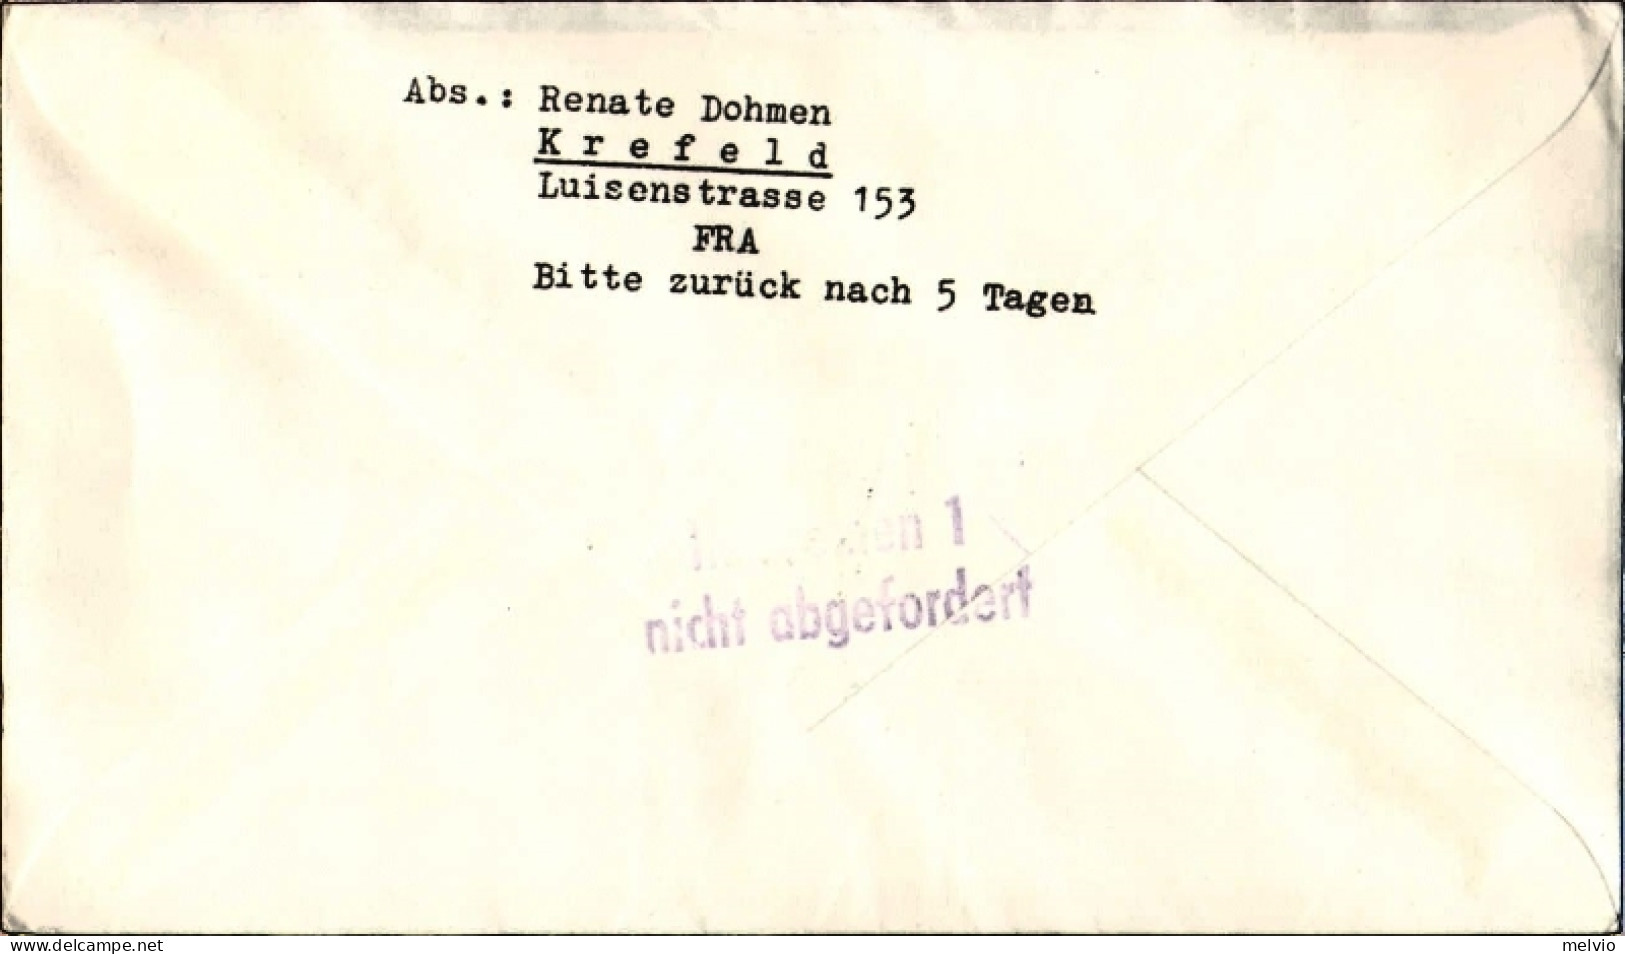 1961-Germania Volo Postale Notturno Lufthansa Eroffnung Des Nachtluftpostdienste - Covers & Documents